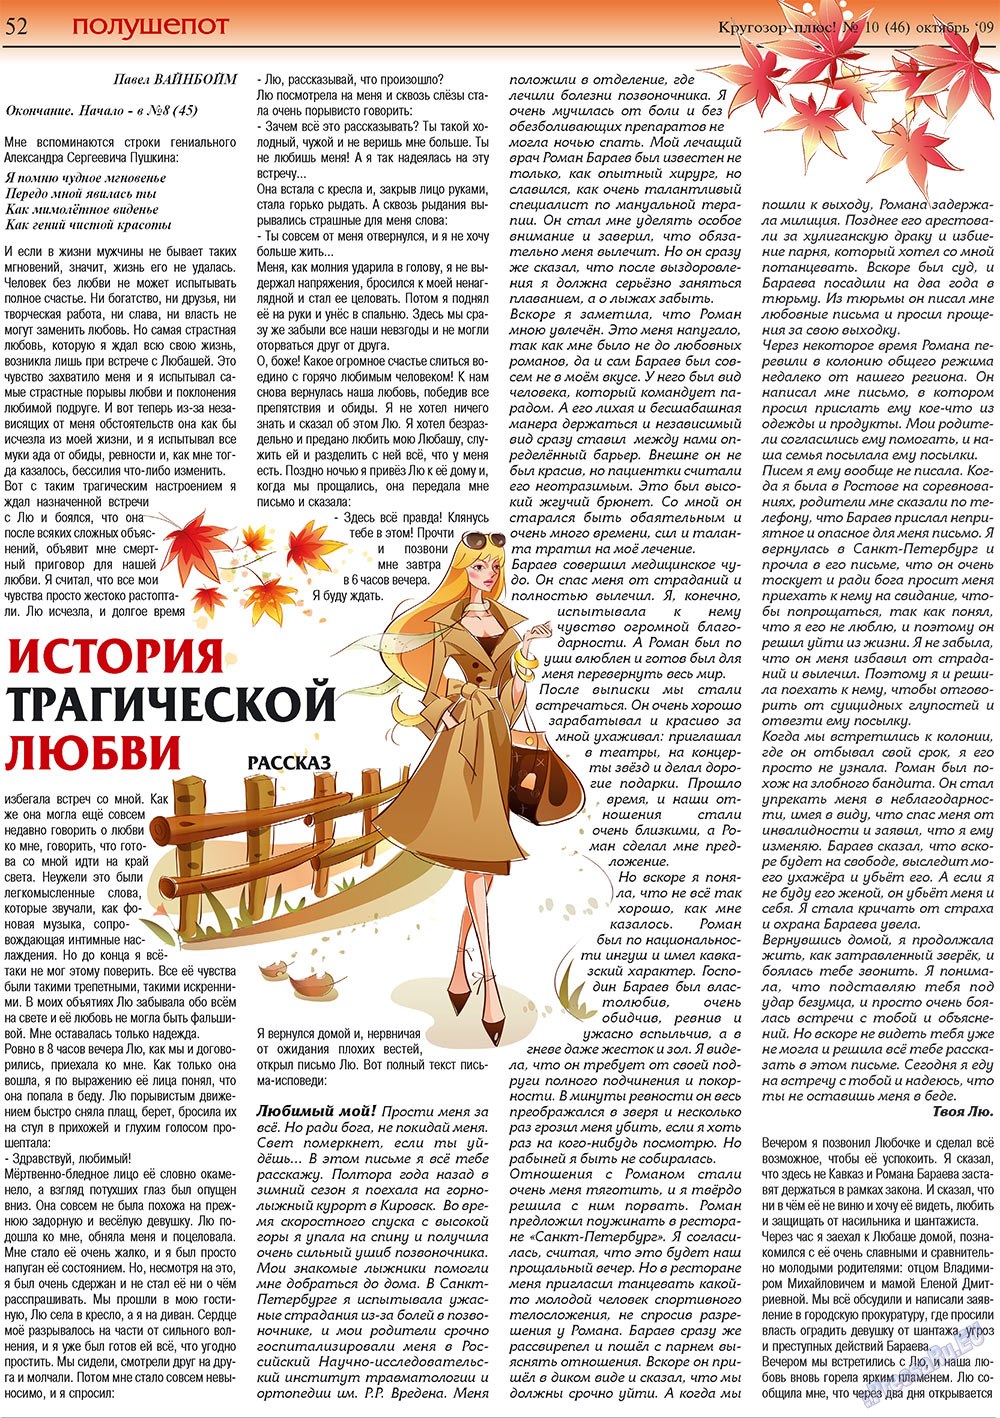 Кругозор плюс!, газета. 2009 №10 стр.52